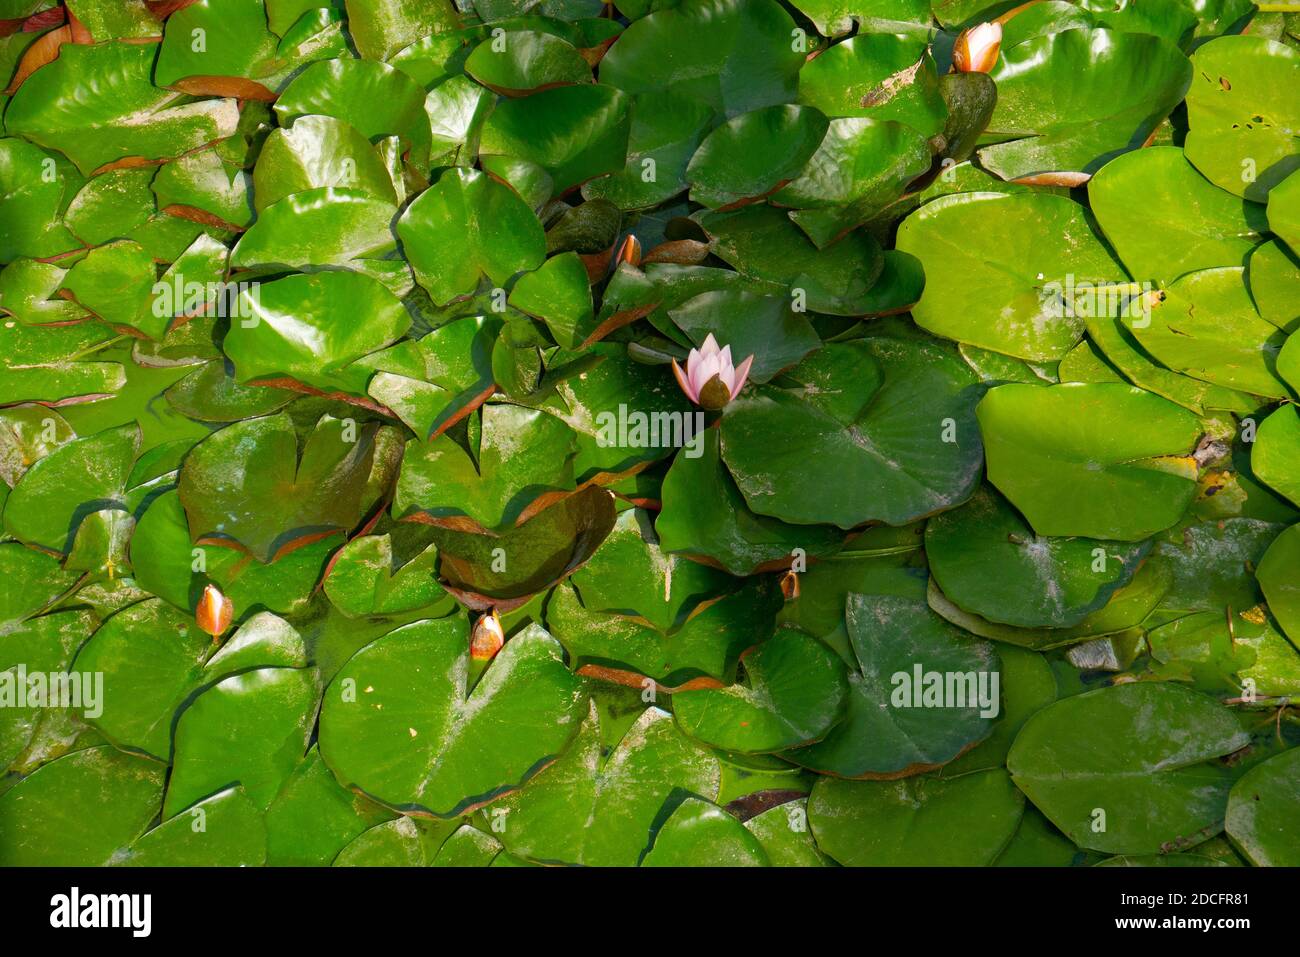 La isla de flores de loto en el agua en todas las fotos. En el medio, el brote ya está floreciendo. El lado aún no ha florecido Foto de stock